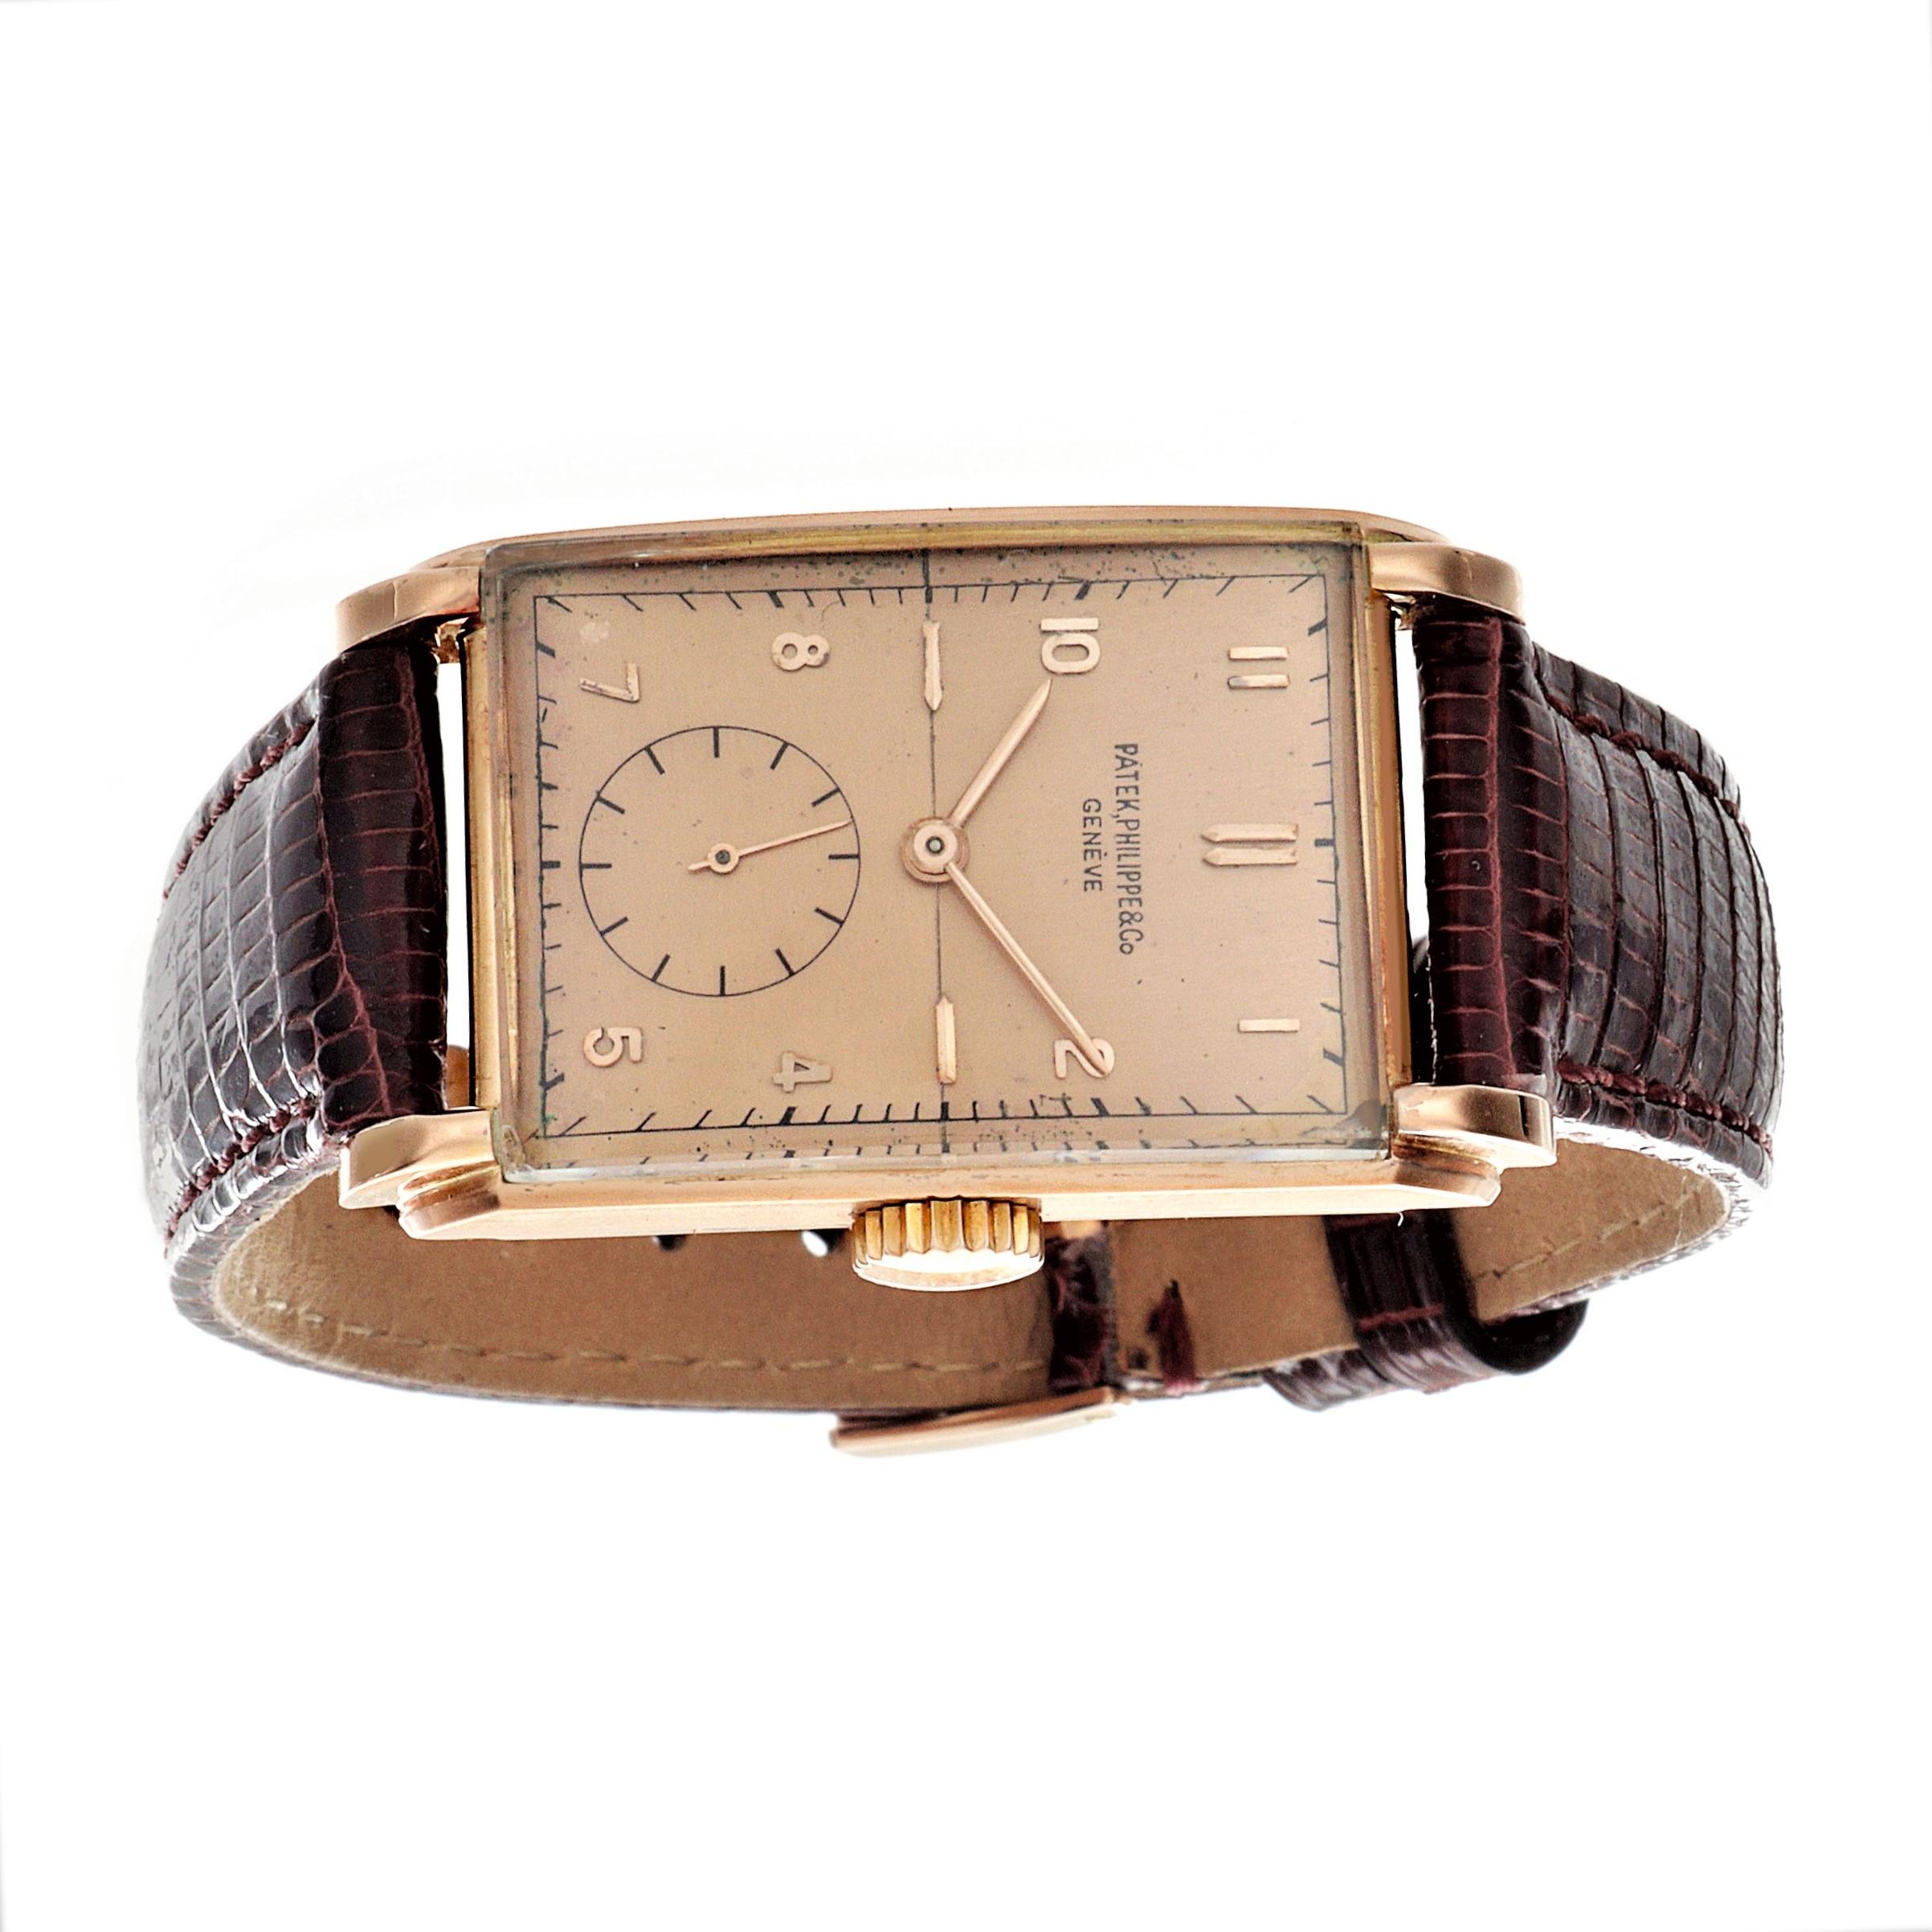 Einleitung:
Patek Philippe 1559R, große rechteckige Uhr aus 18 Karat Roségold, 39 x 23 mm, mit originalem Rosalachs-Zifferblatt, erhabenen Indexen und Zeigern aus Roségold.  Die Uhr wurde 1947 hergestellt und ist mit einem 9